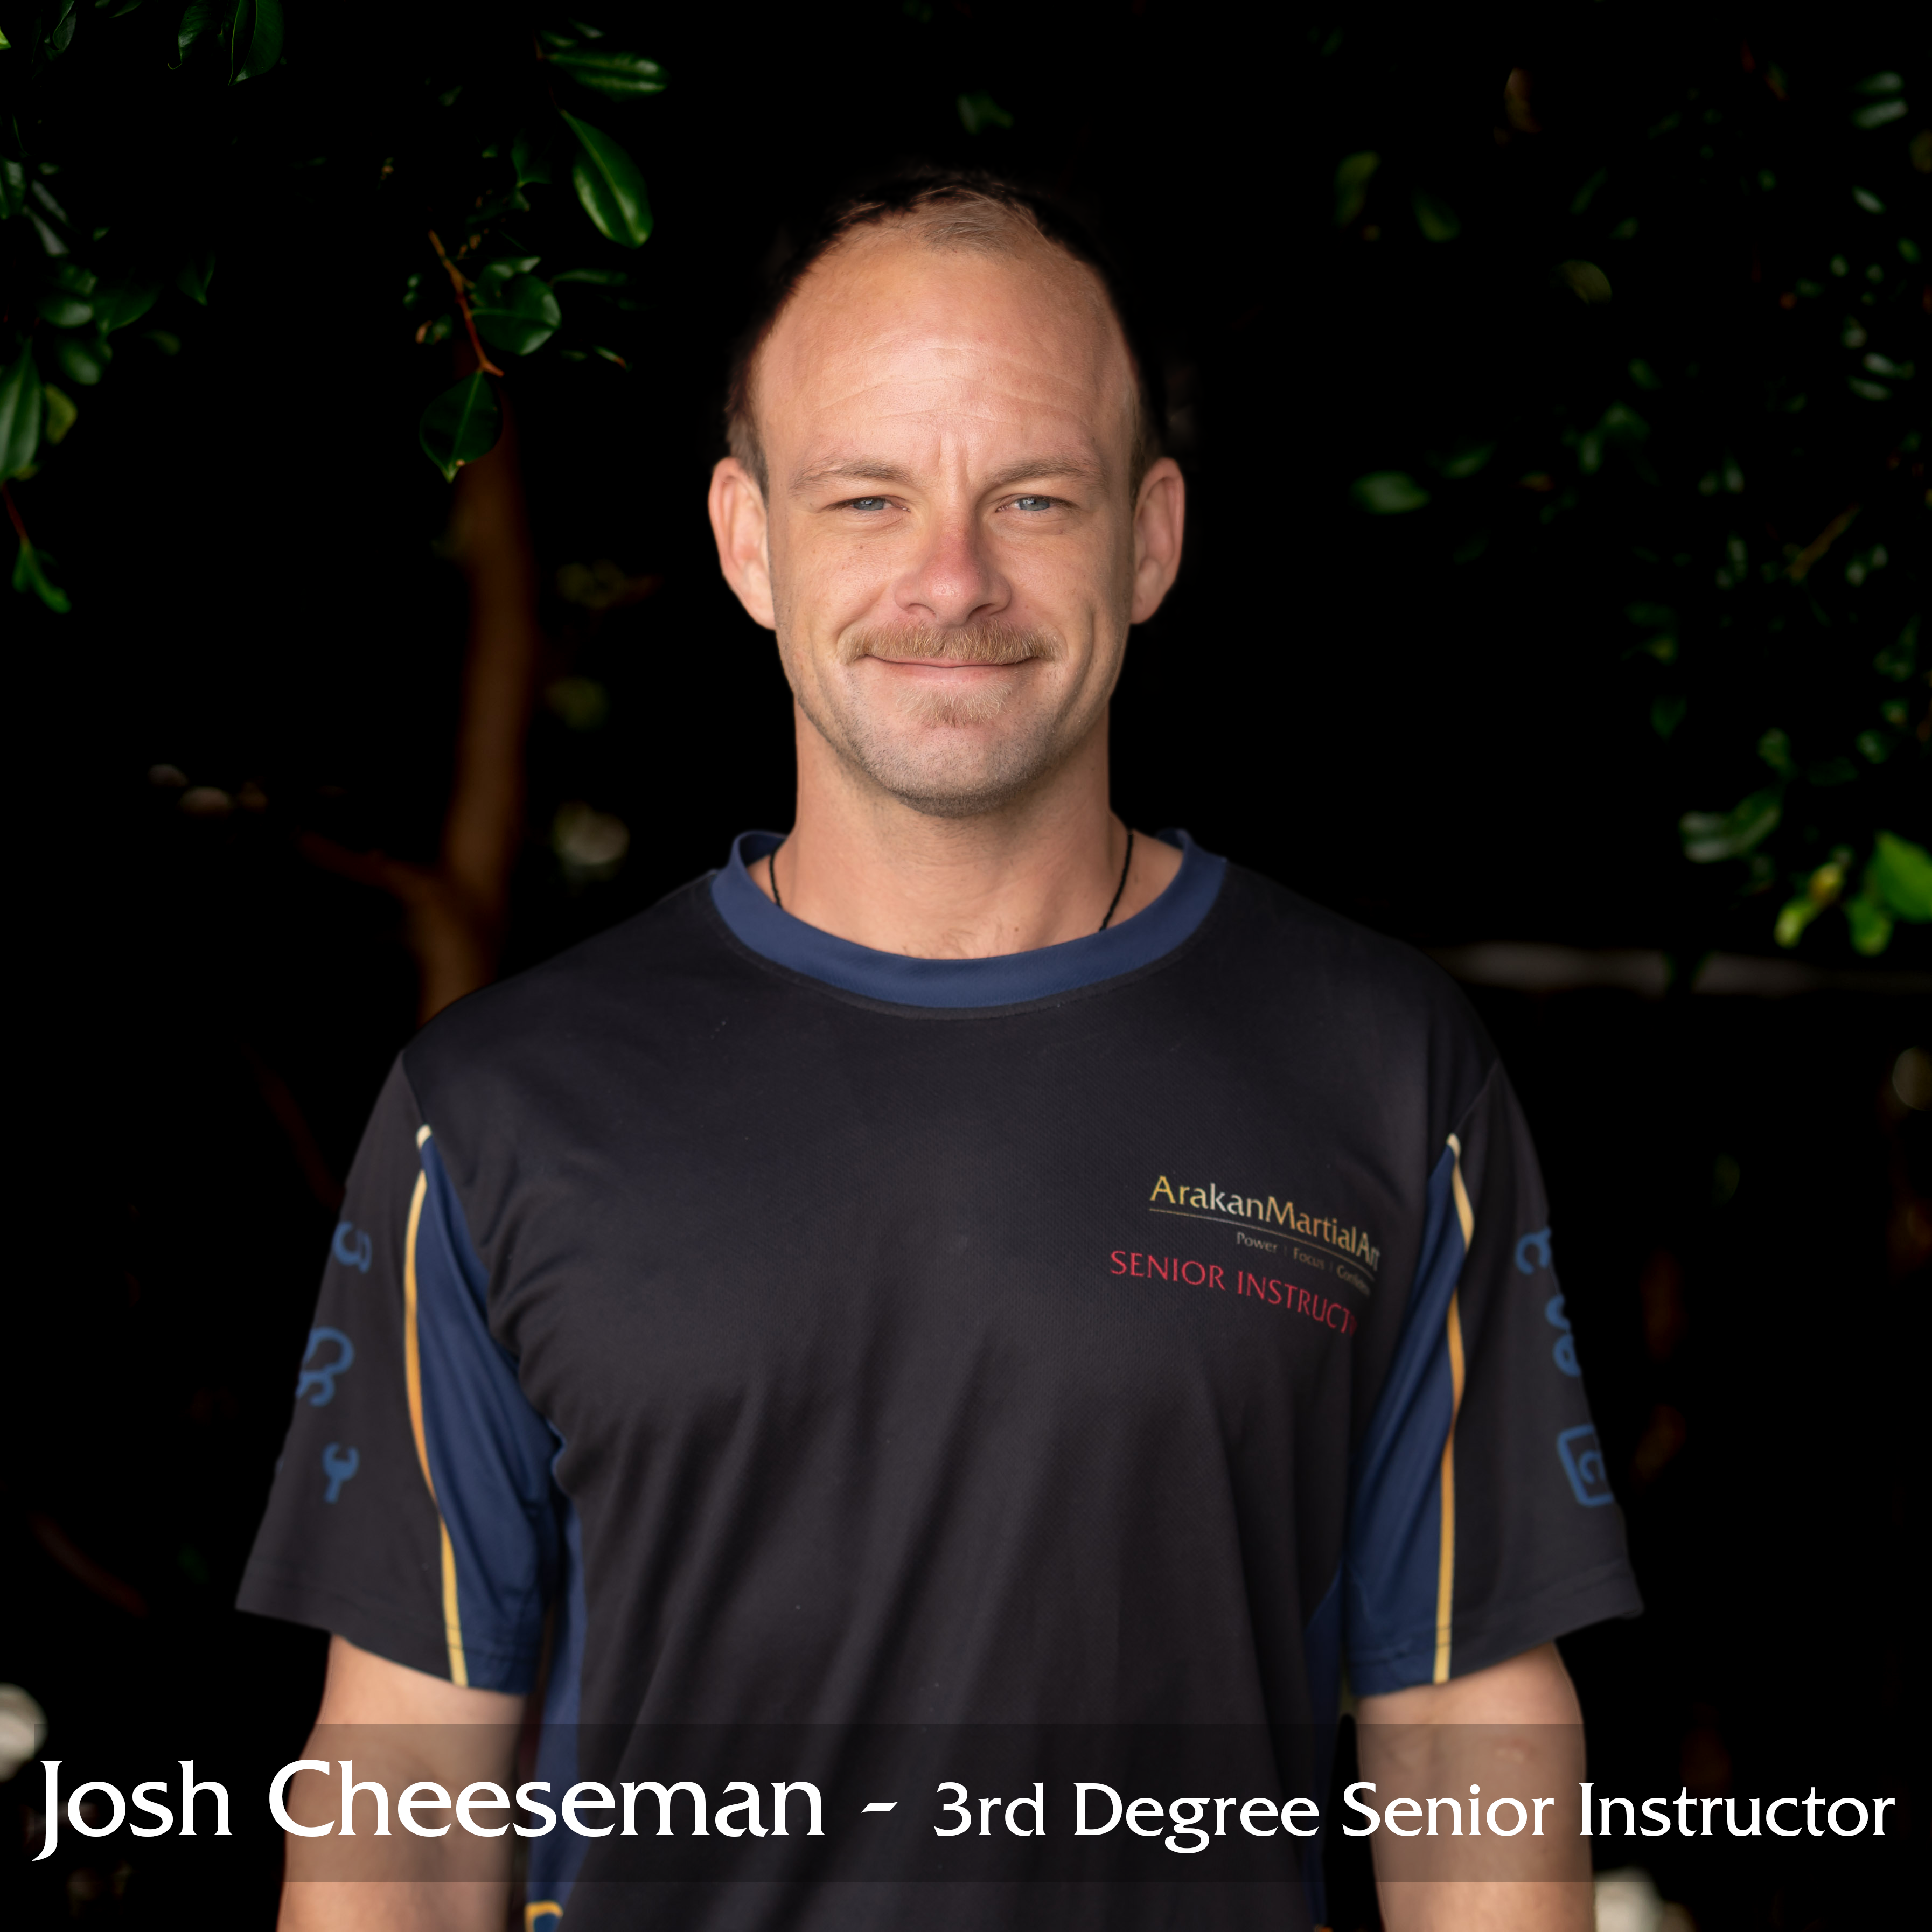 Josh Cheeseman